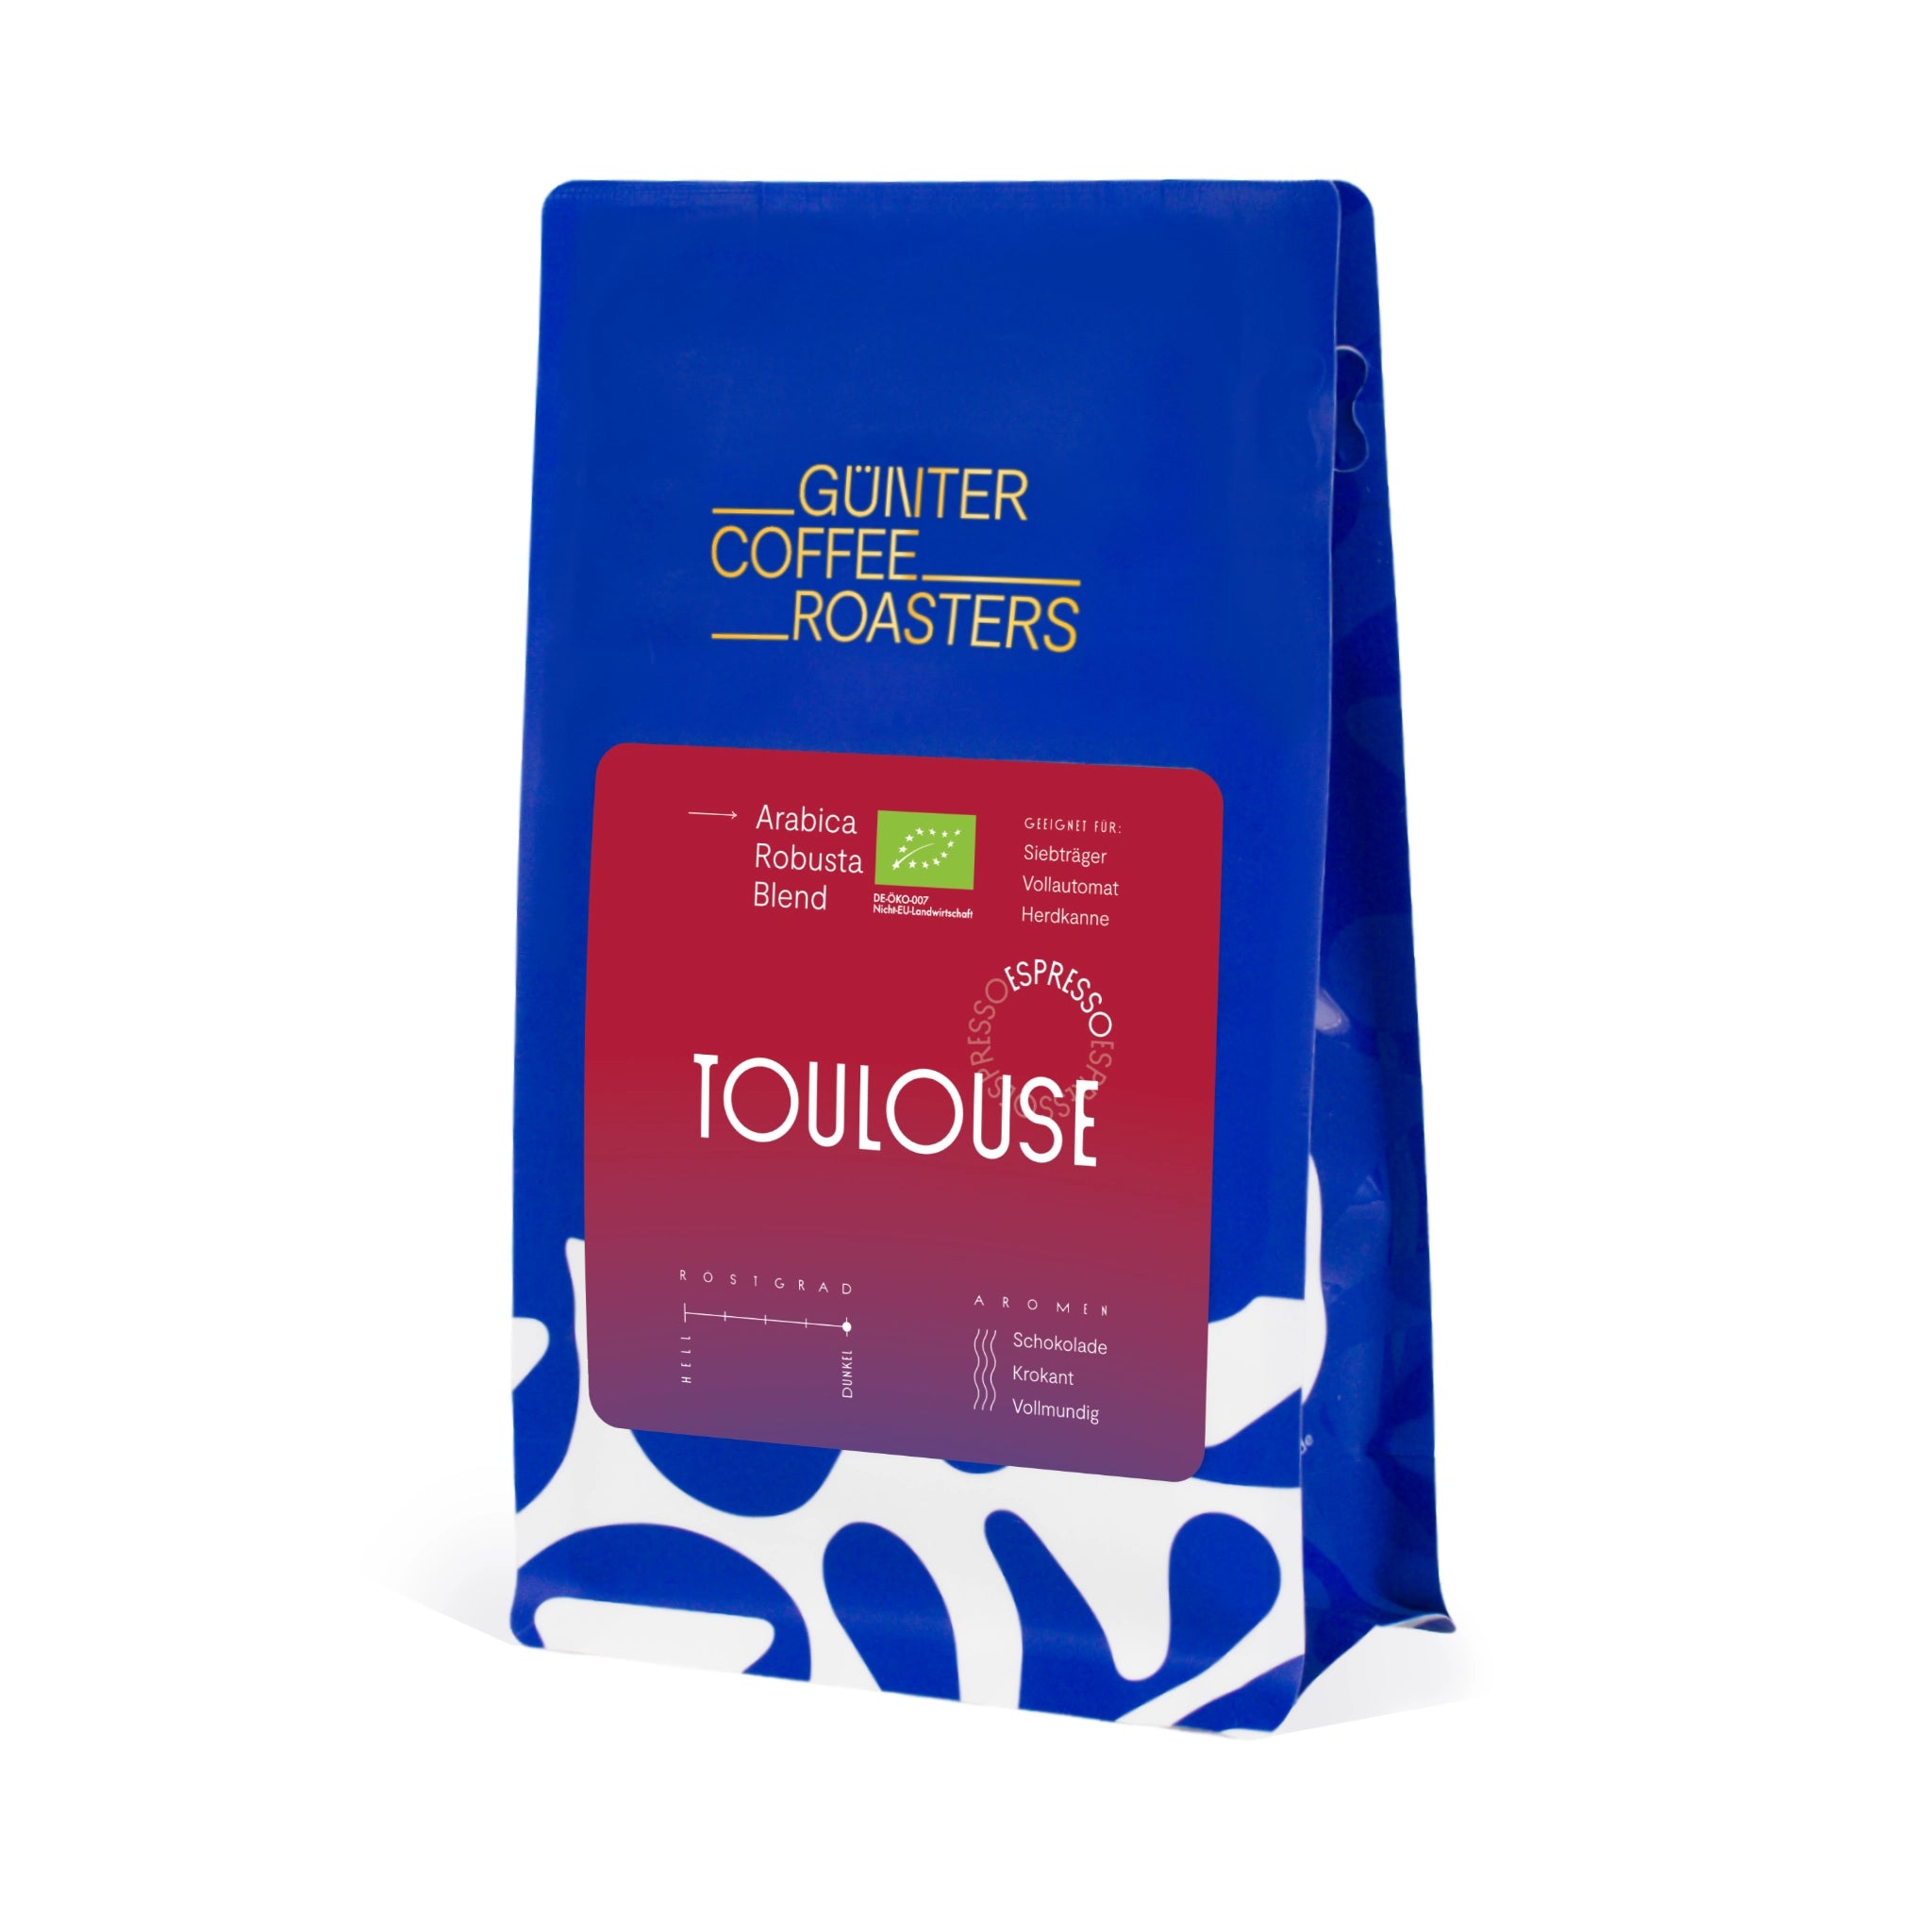 Produktverpackung Toulouse Bio-Kaffeebohnen aus Ruanda für die Zubereitung als Espresso. Noten von Schokolade und Krokant, vollmundig im Geschmack. Röstgrad 5 von 5. Arabica-Robusta-Blend mit Rohkaffees aus Indien, Brasilien und Guatemala.